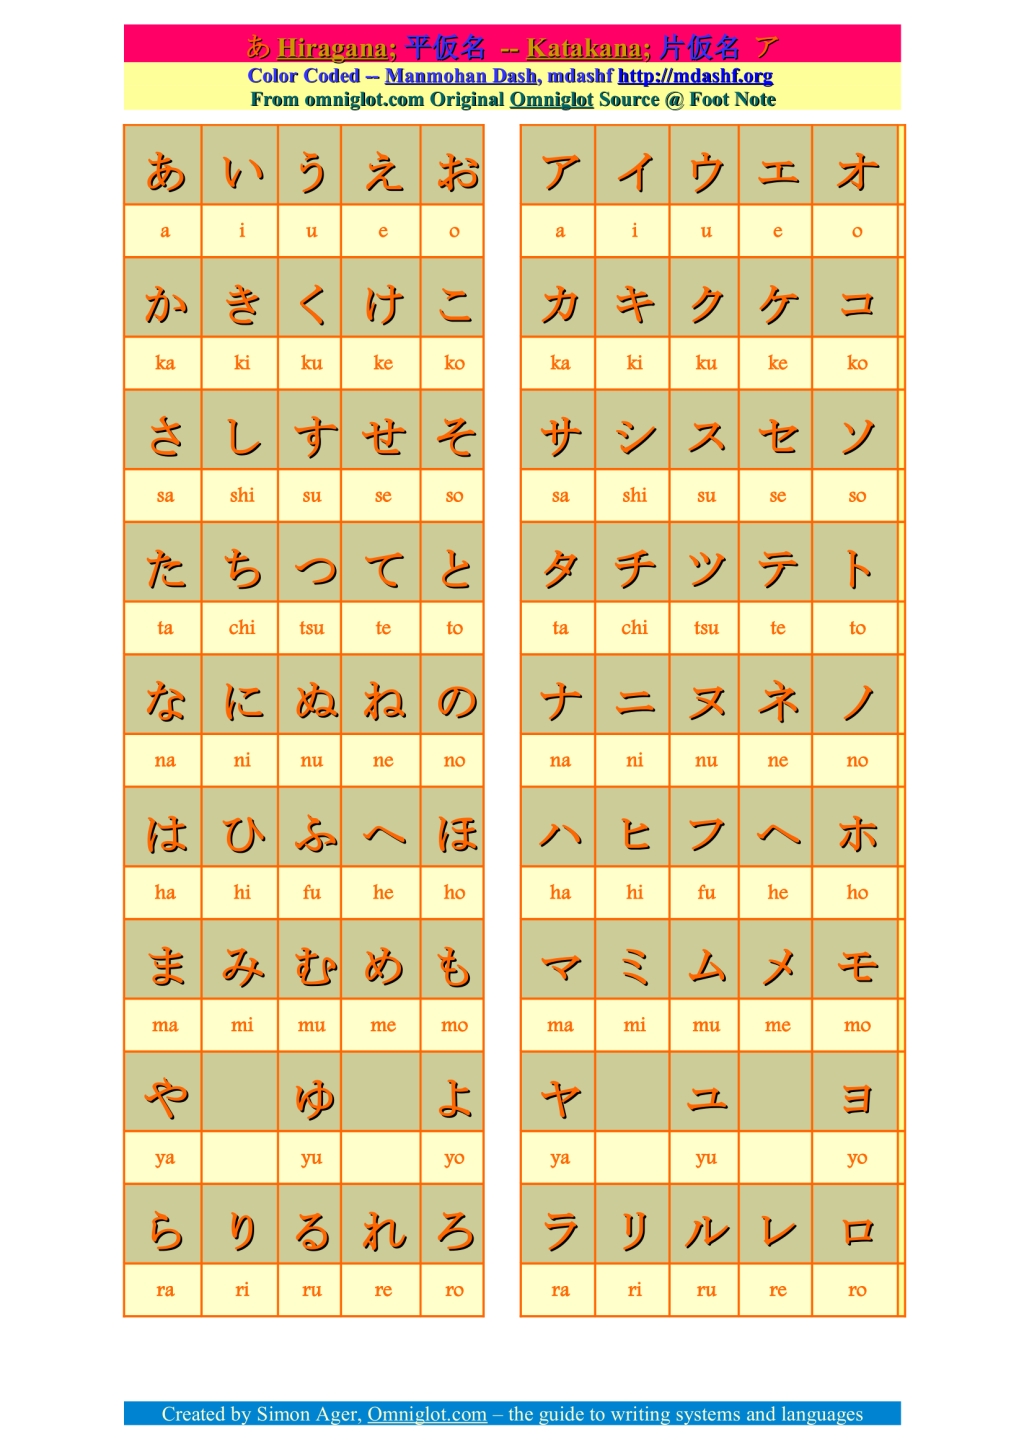 hiragana, katakana and romaji characters.